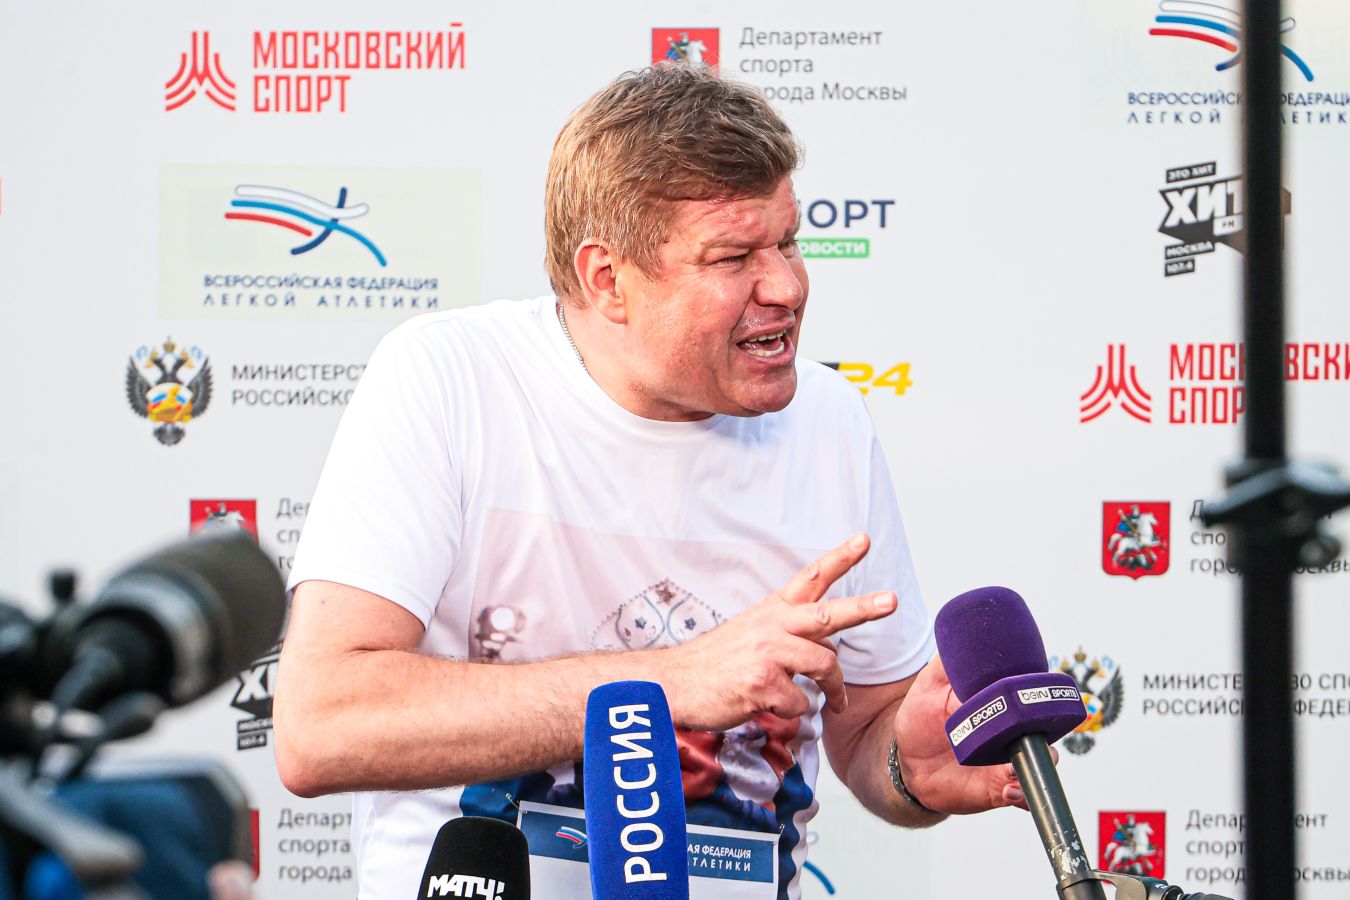 Губерниев: несколько биатлонистов явно попали в состав сборной России незаслуженно. Блат?